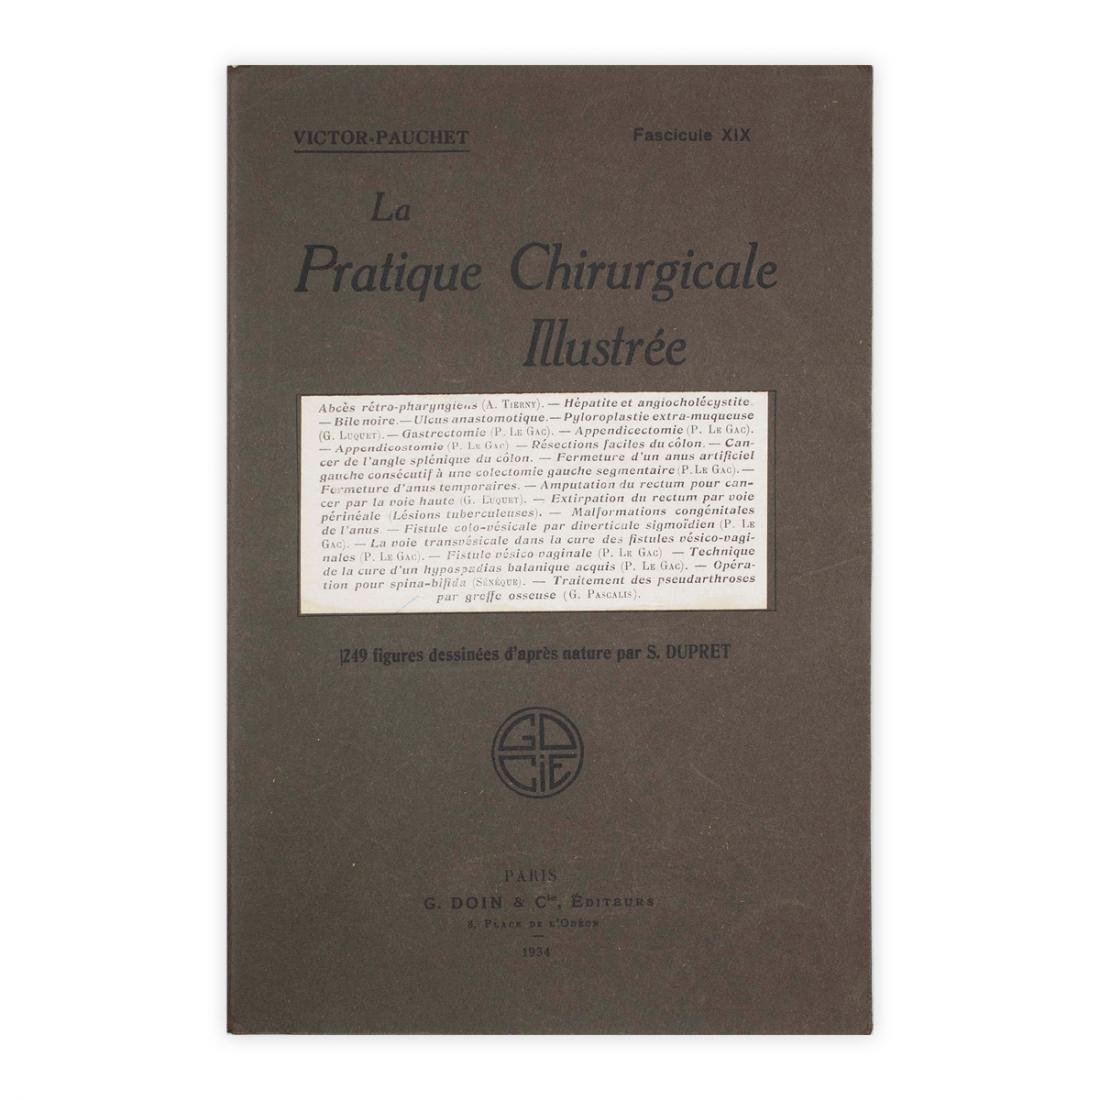 V. Pauchet - La Pratique Chirurgicale Illustrèe - Fascicule XIX